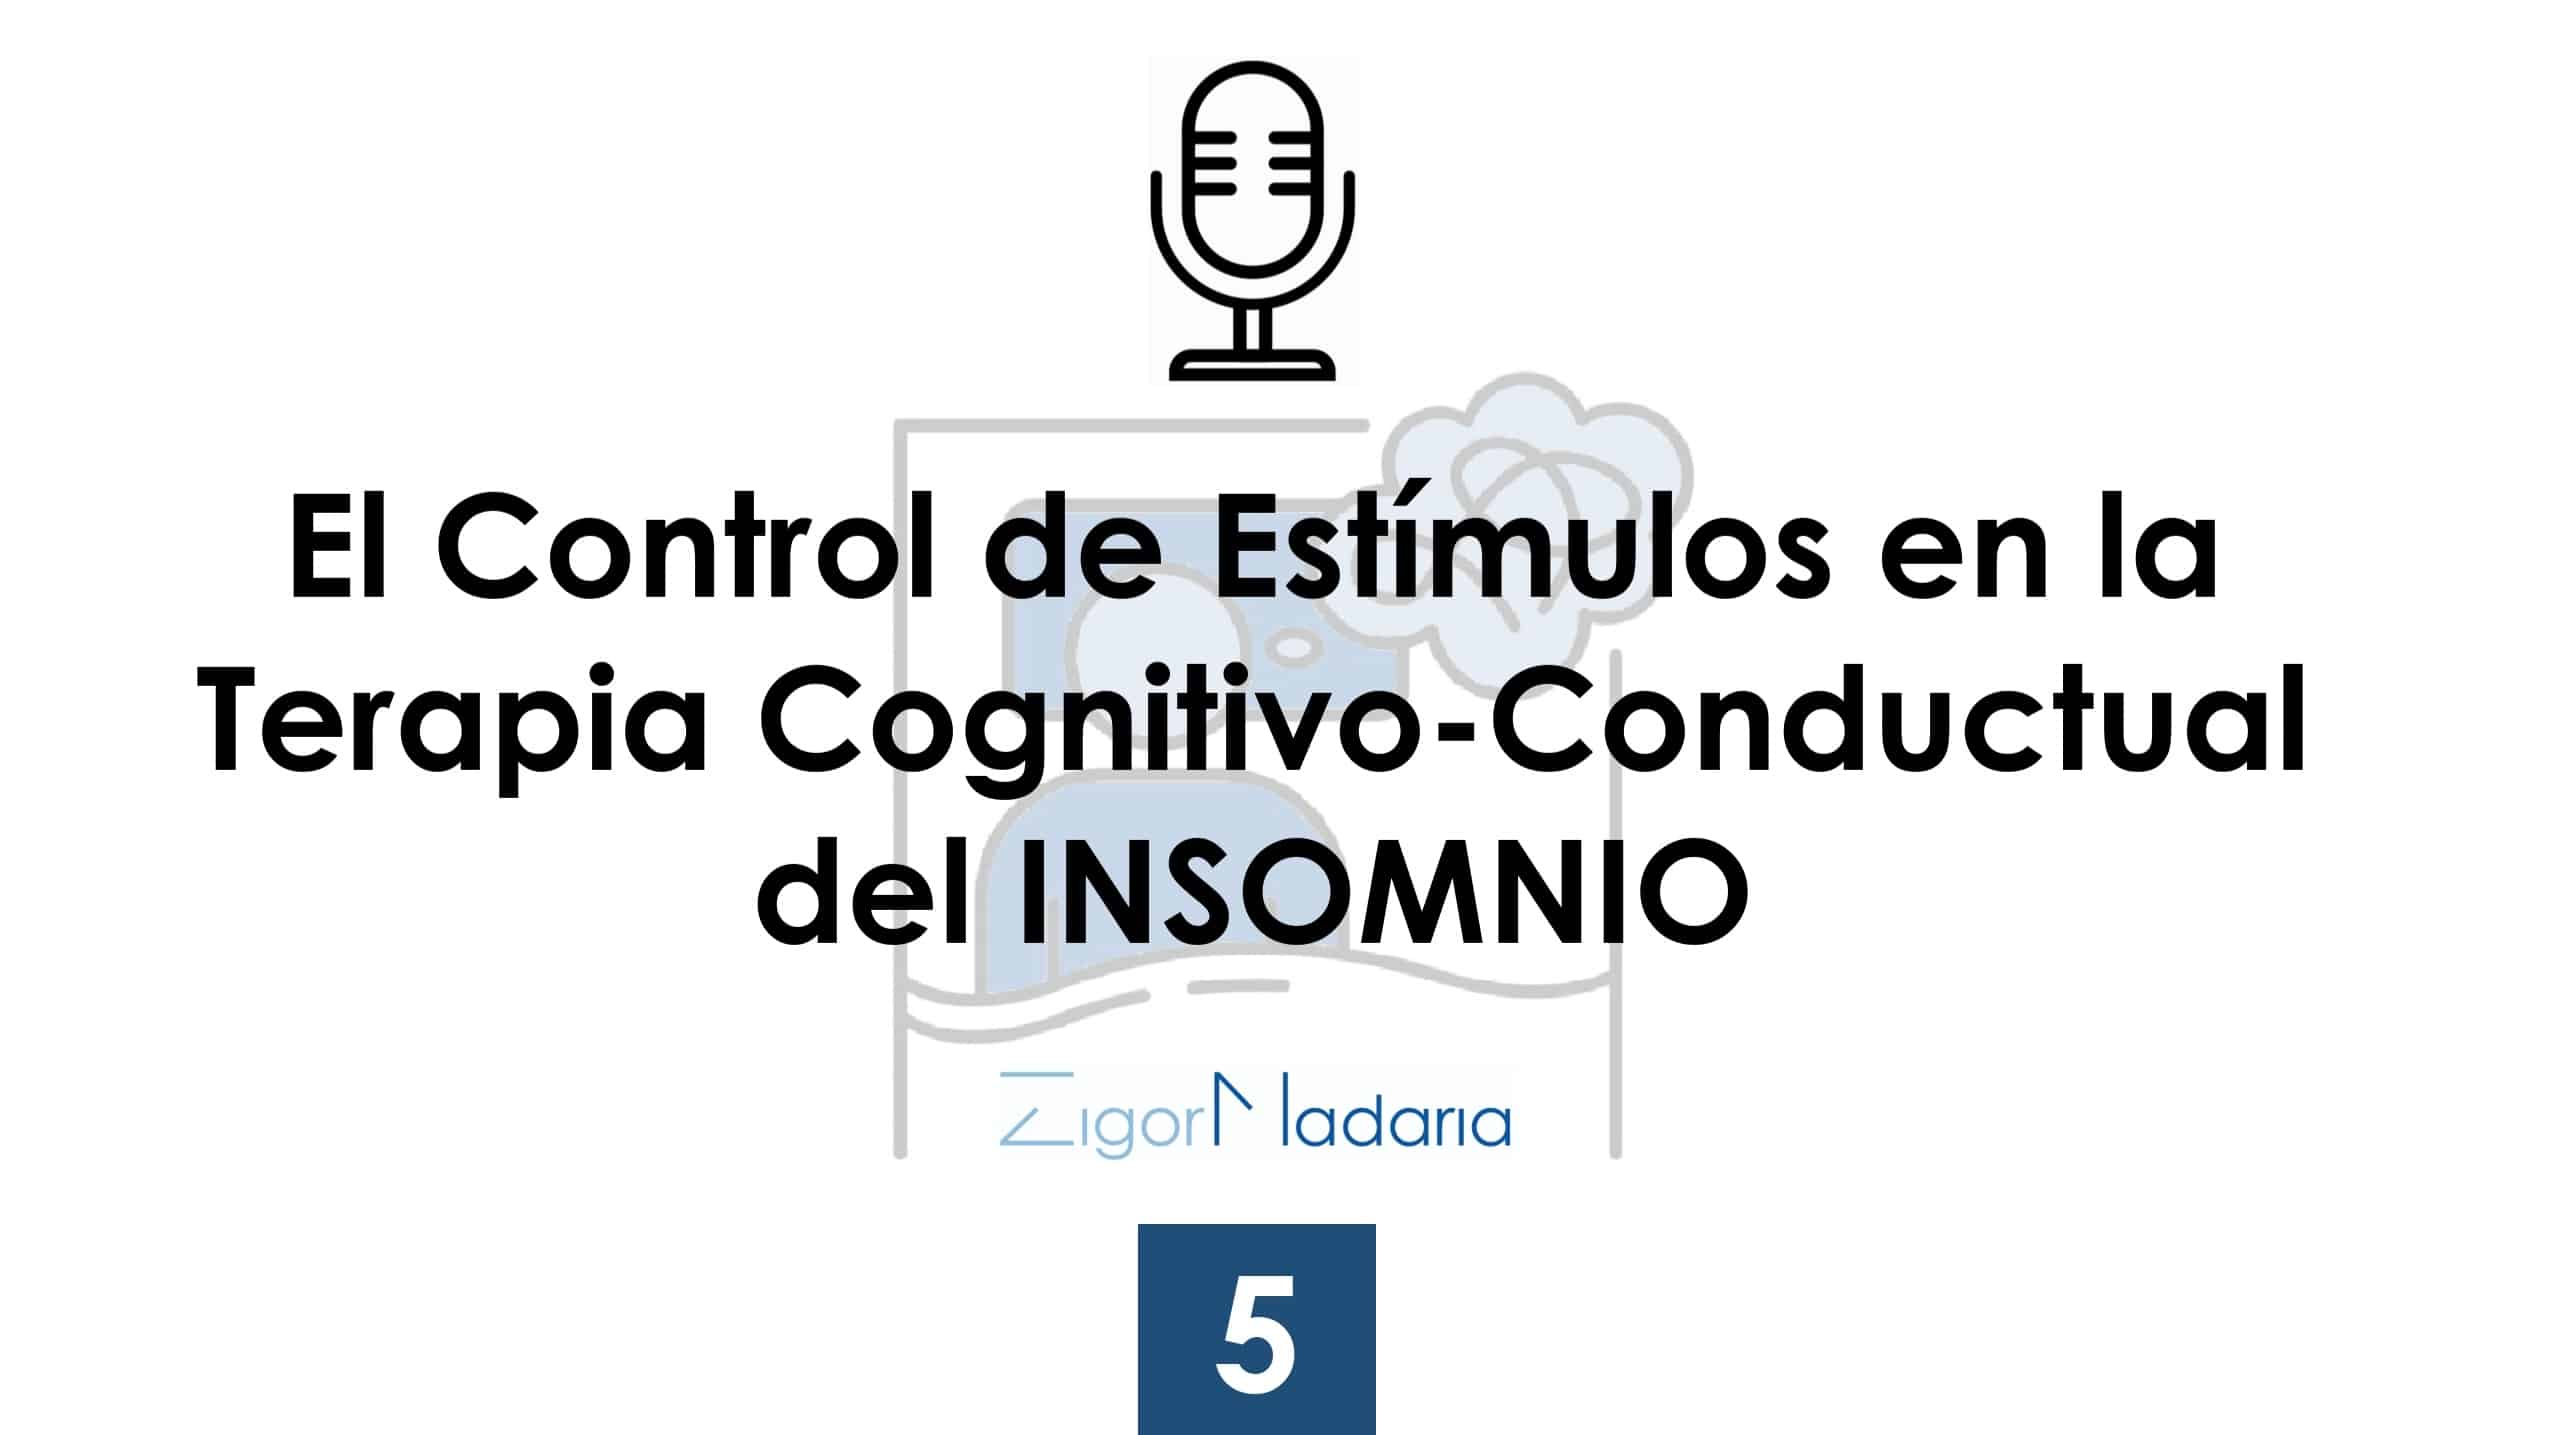 El control de estímulos en la terapia cognitivo-conductual del insomnio